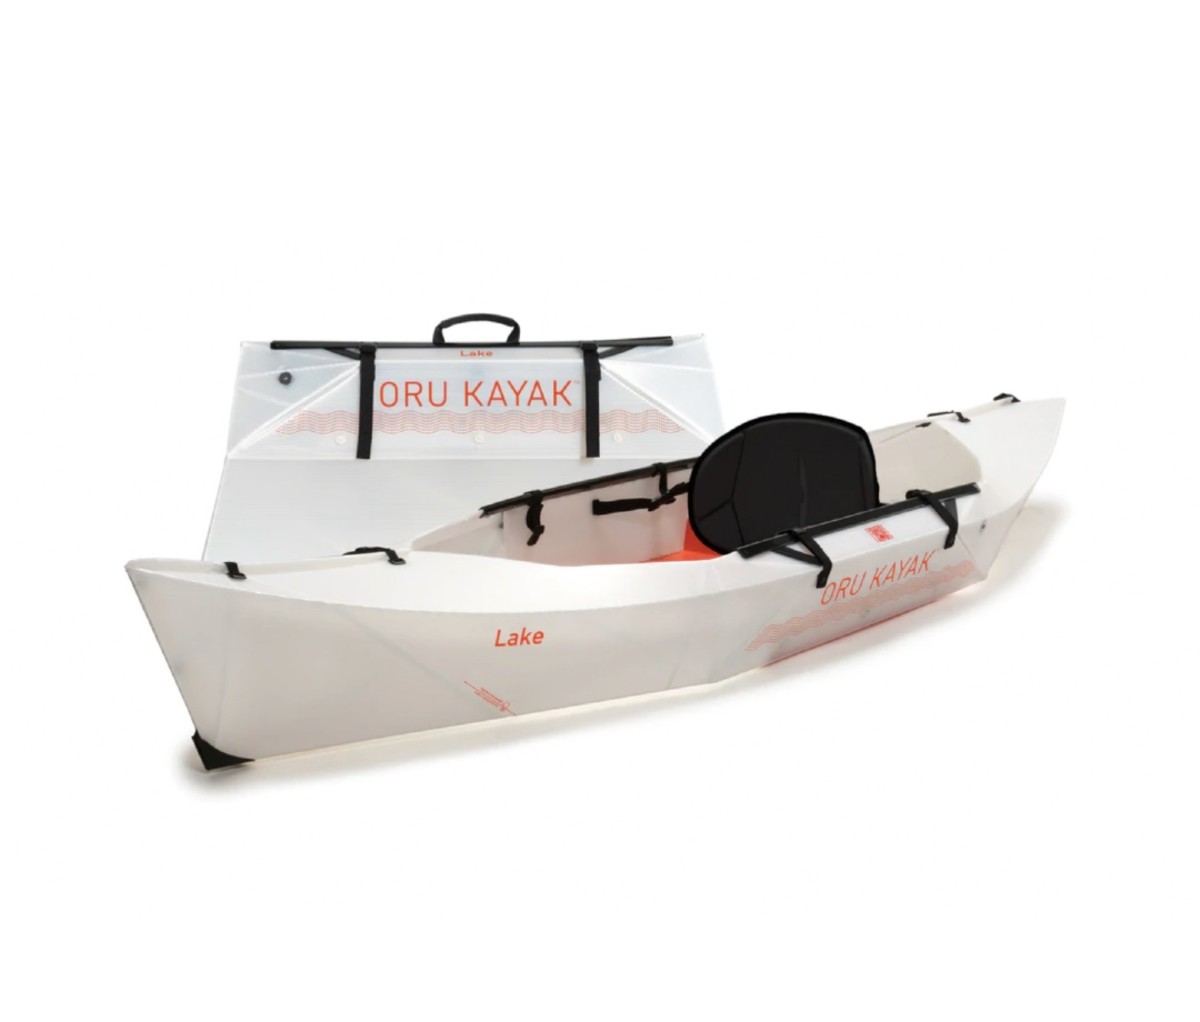 Take a capable kayak with you wherever you go with the Oru Lake Kayak.